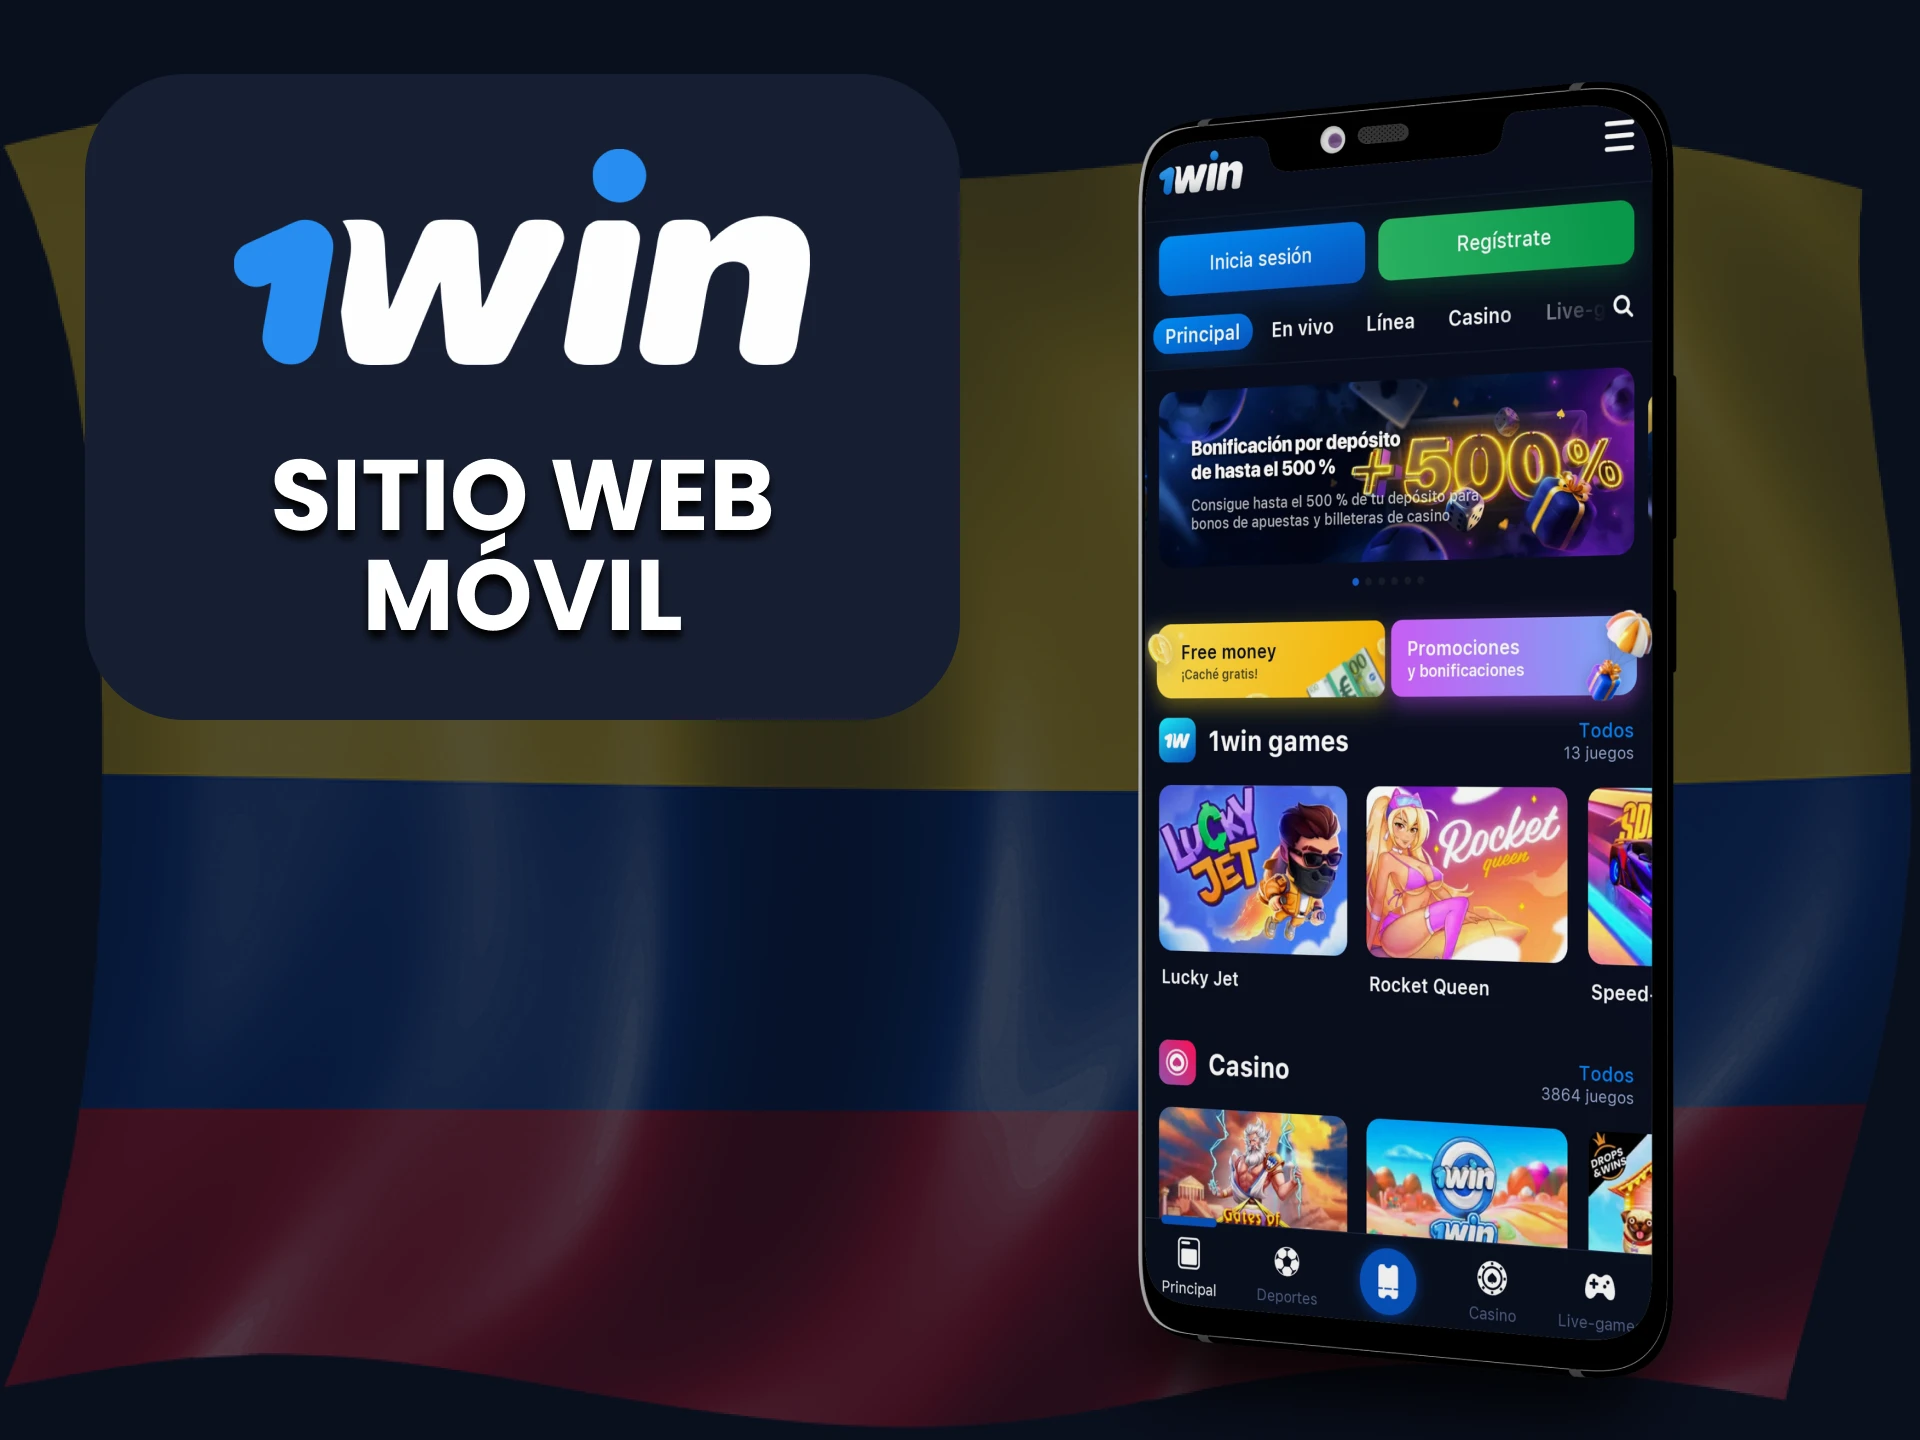 Visite la versión móvil del sitio web de 1win.